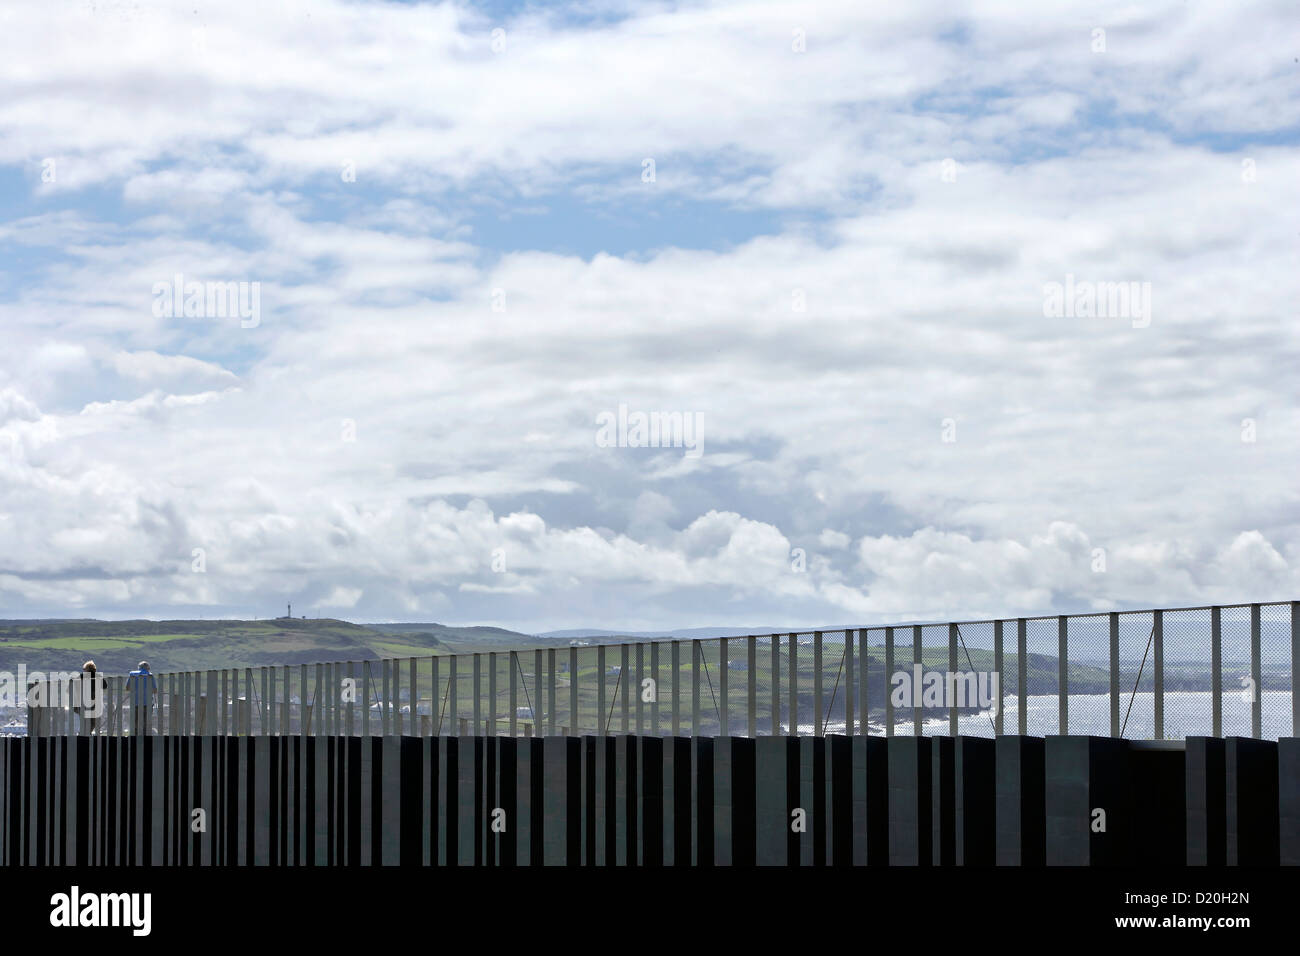 Giant's Causeway Visitor Centre, Bushmills, Royaume-Uni. Architecte : heneghan peng architectes, 2012. Passerelle avec toit en pente Banque D'Images